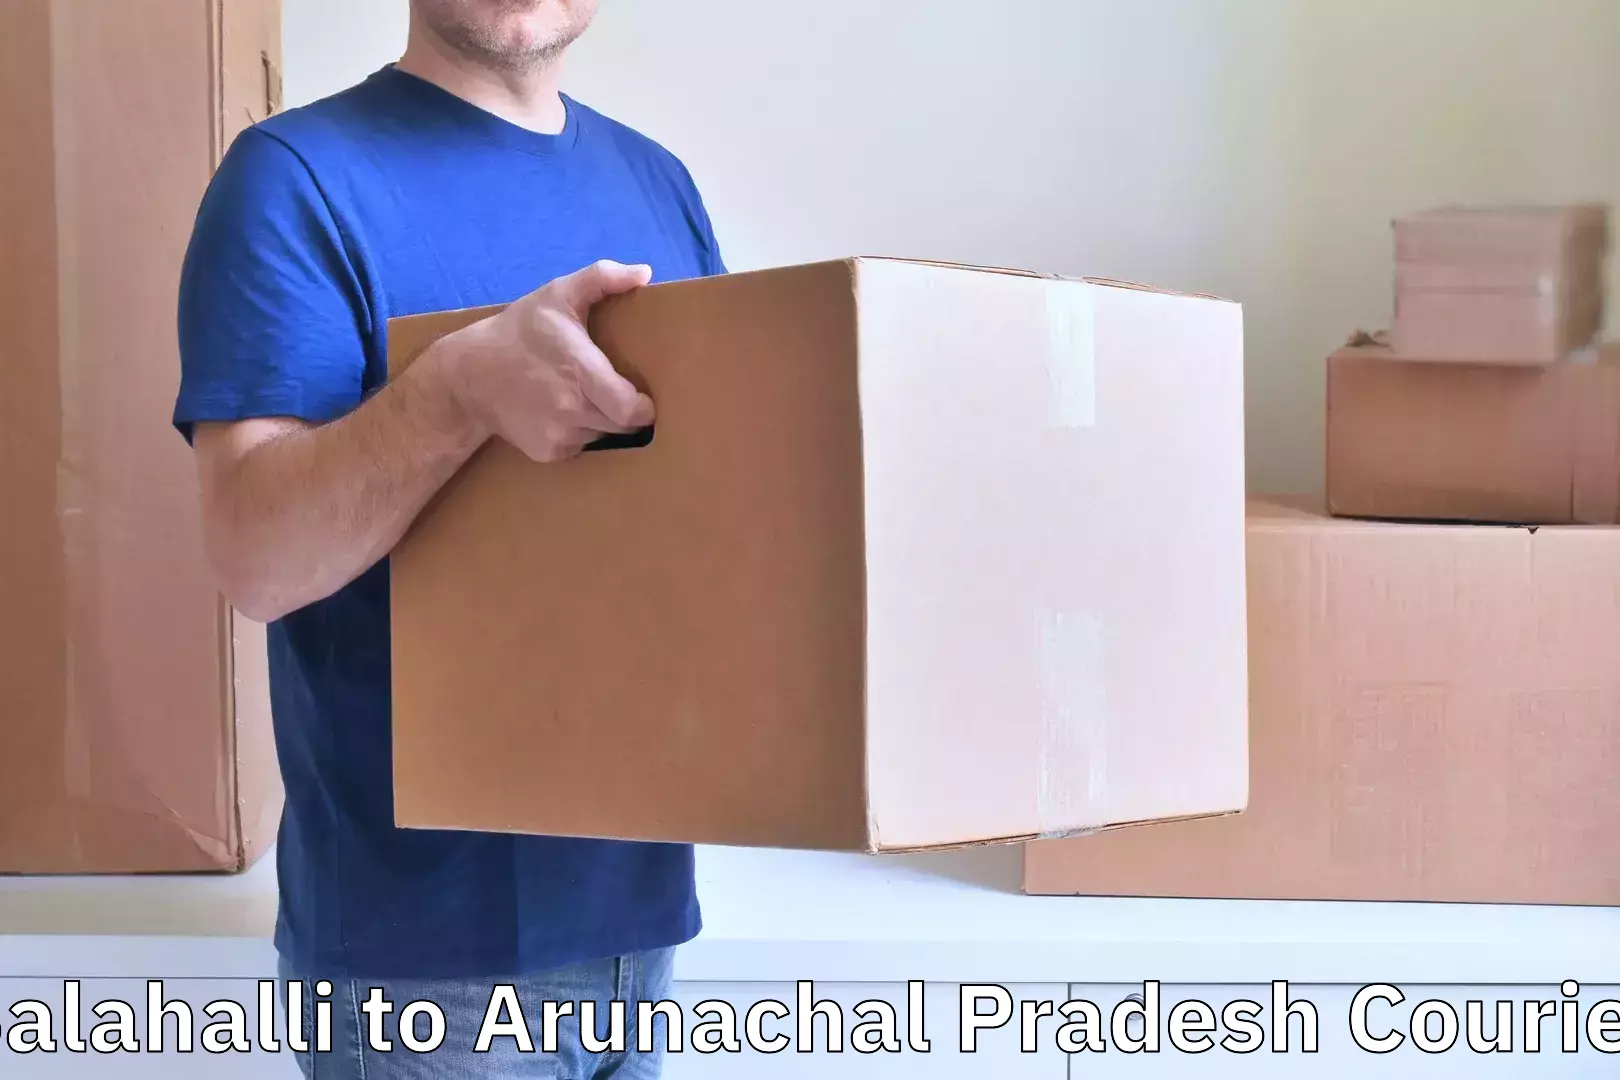 Door-to-door baggage service Salahalli to Arunachal Pradesh